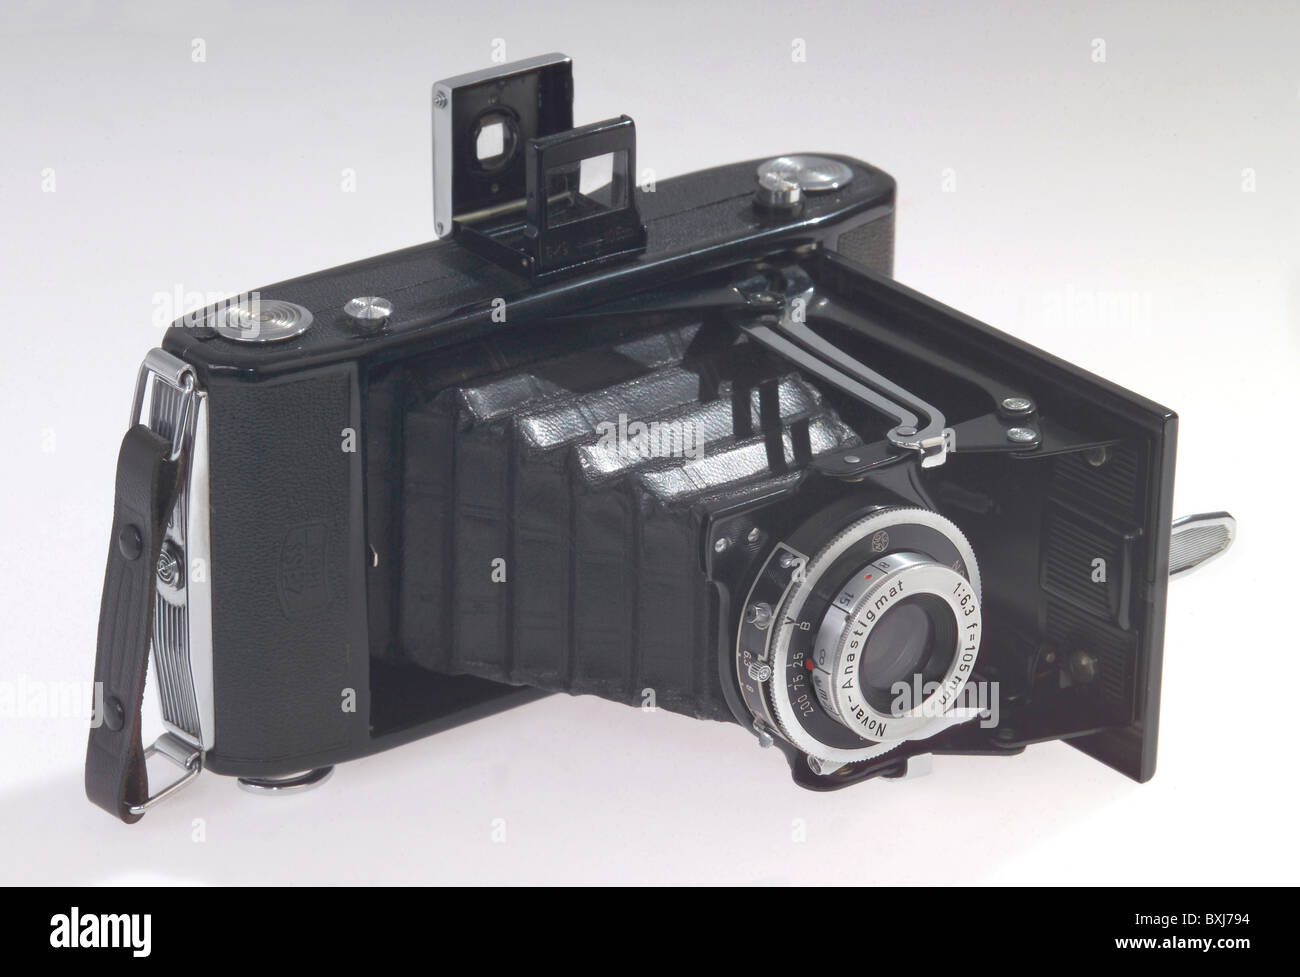 Fotografia, fotocamere, Zeiss Ikon, film a rullo, obiettivo: Novar, Anastigmat, Germania, circa 1955, diritti aggiuntivi-clearences-non disponibile Foto Stock